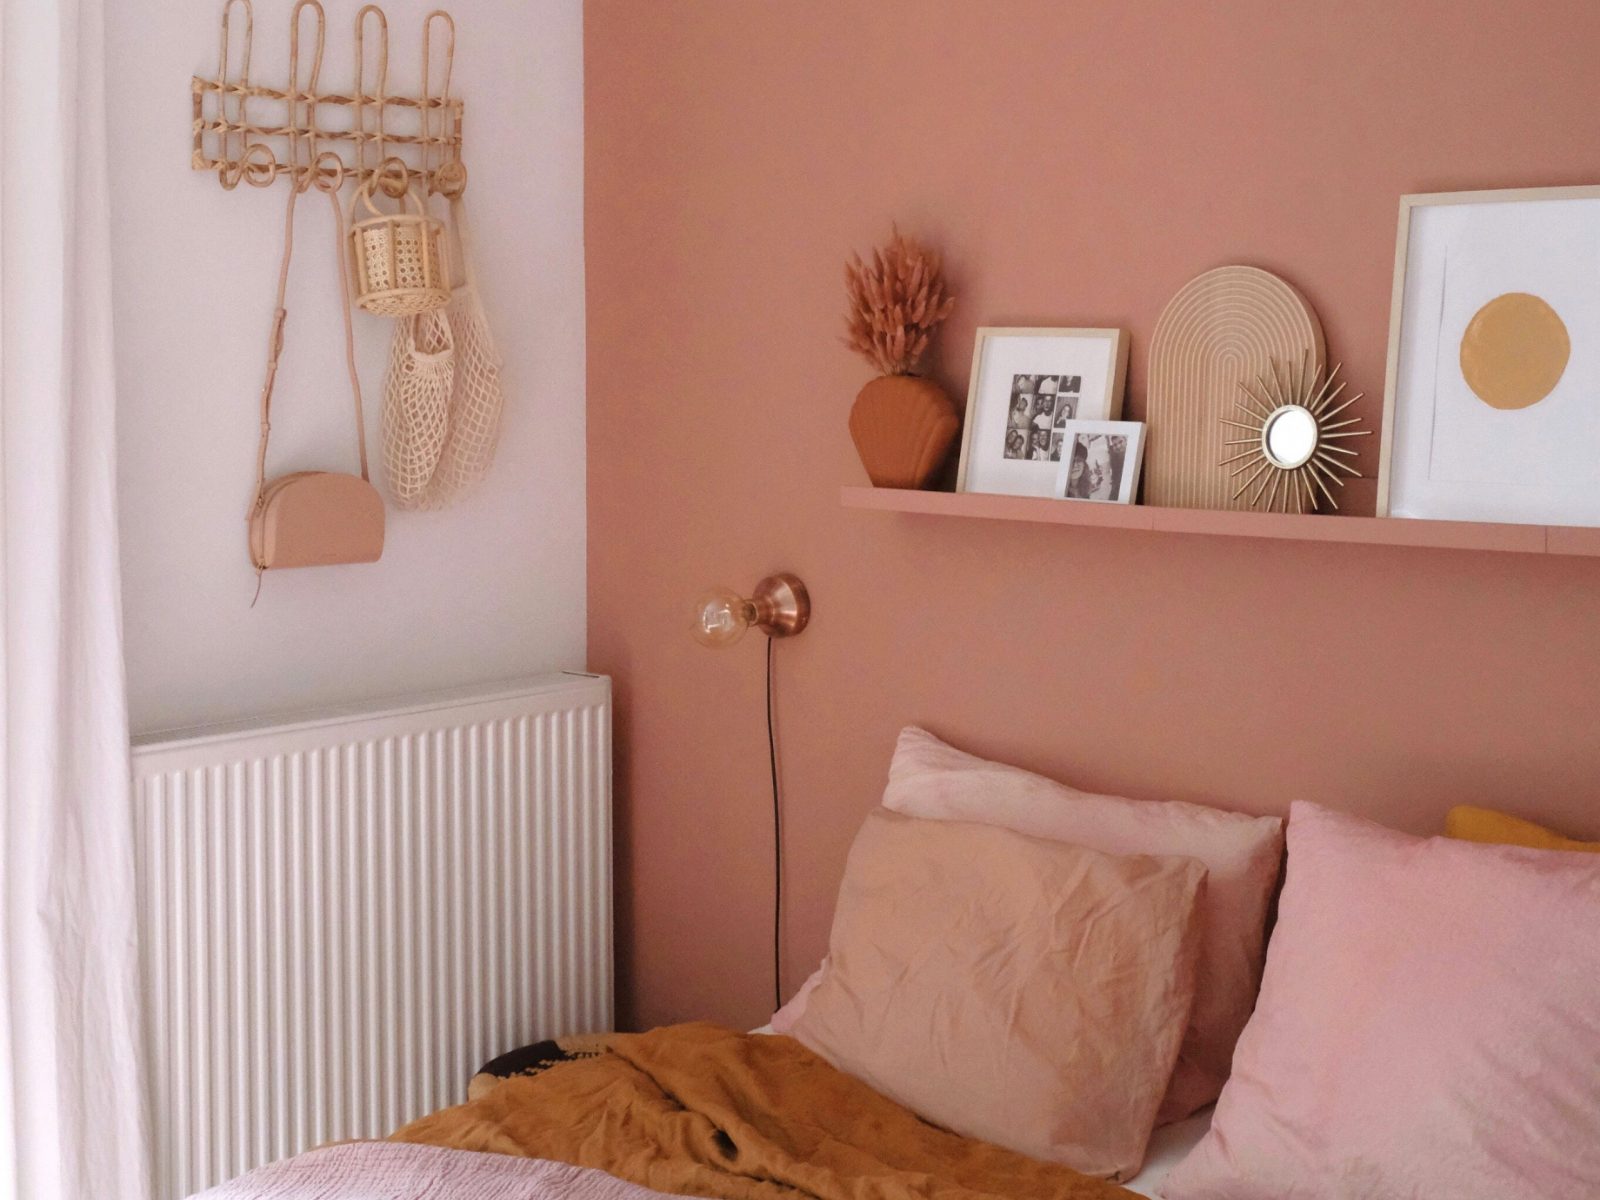 Màu hồng cam được sử dụng làm màu tường, ra giường và các chi tiết trang trí khác